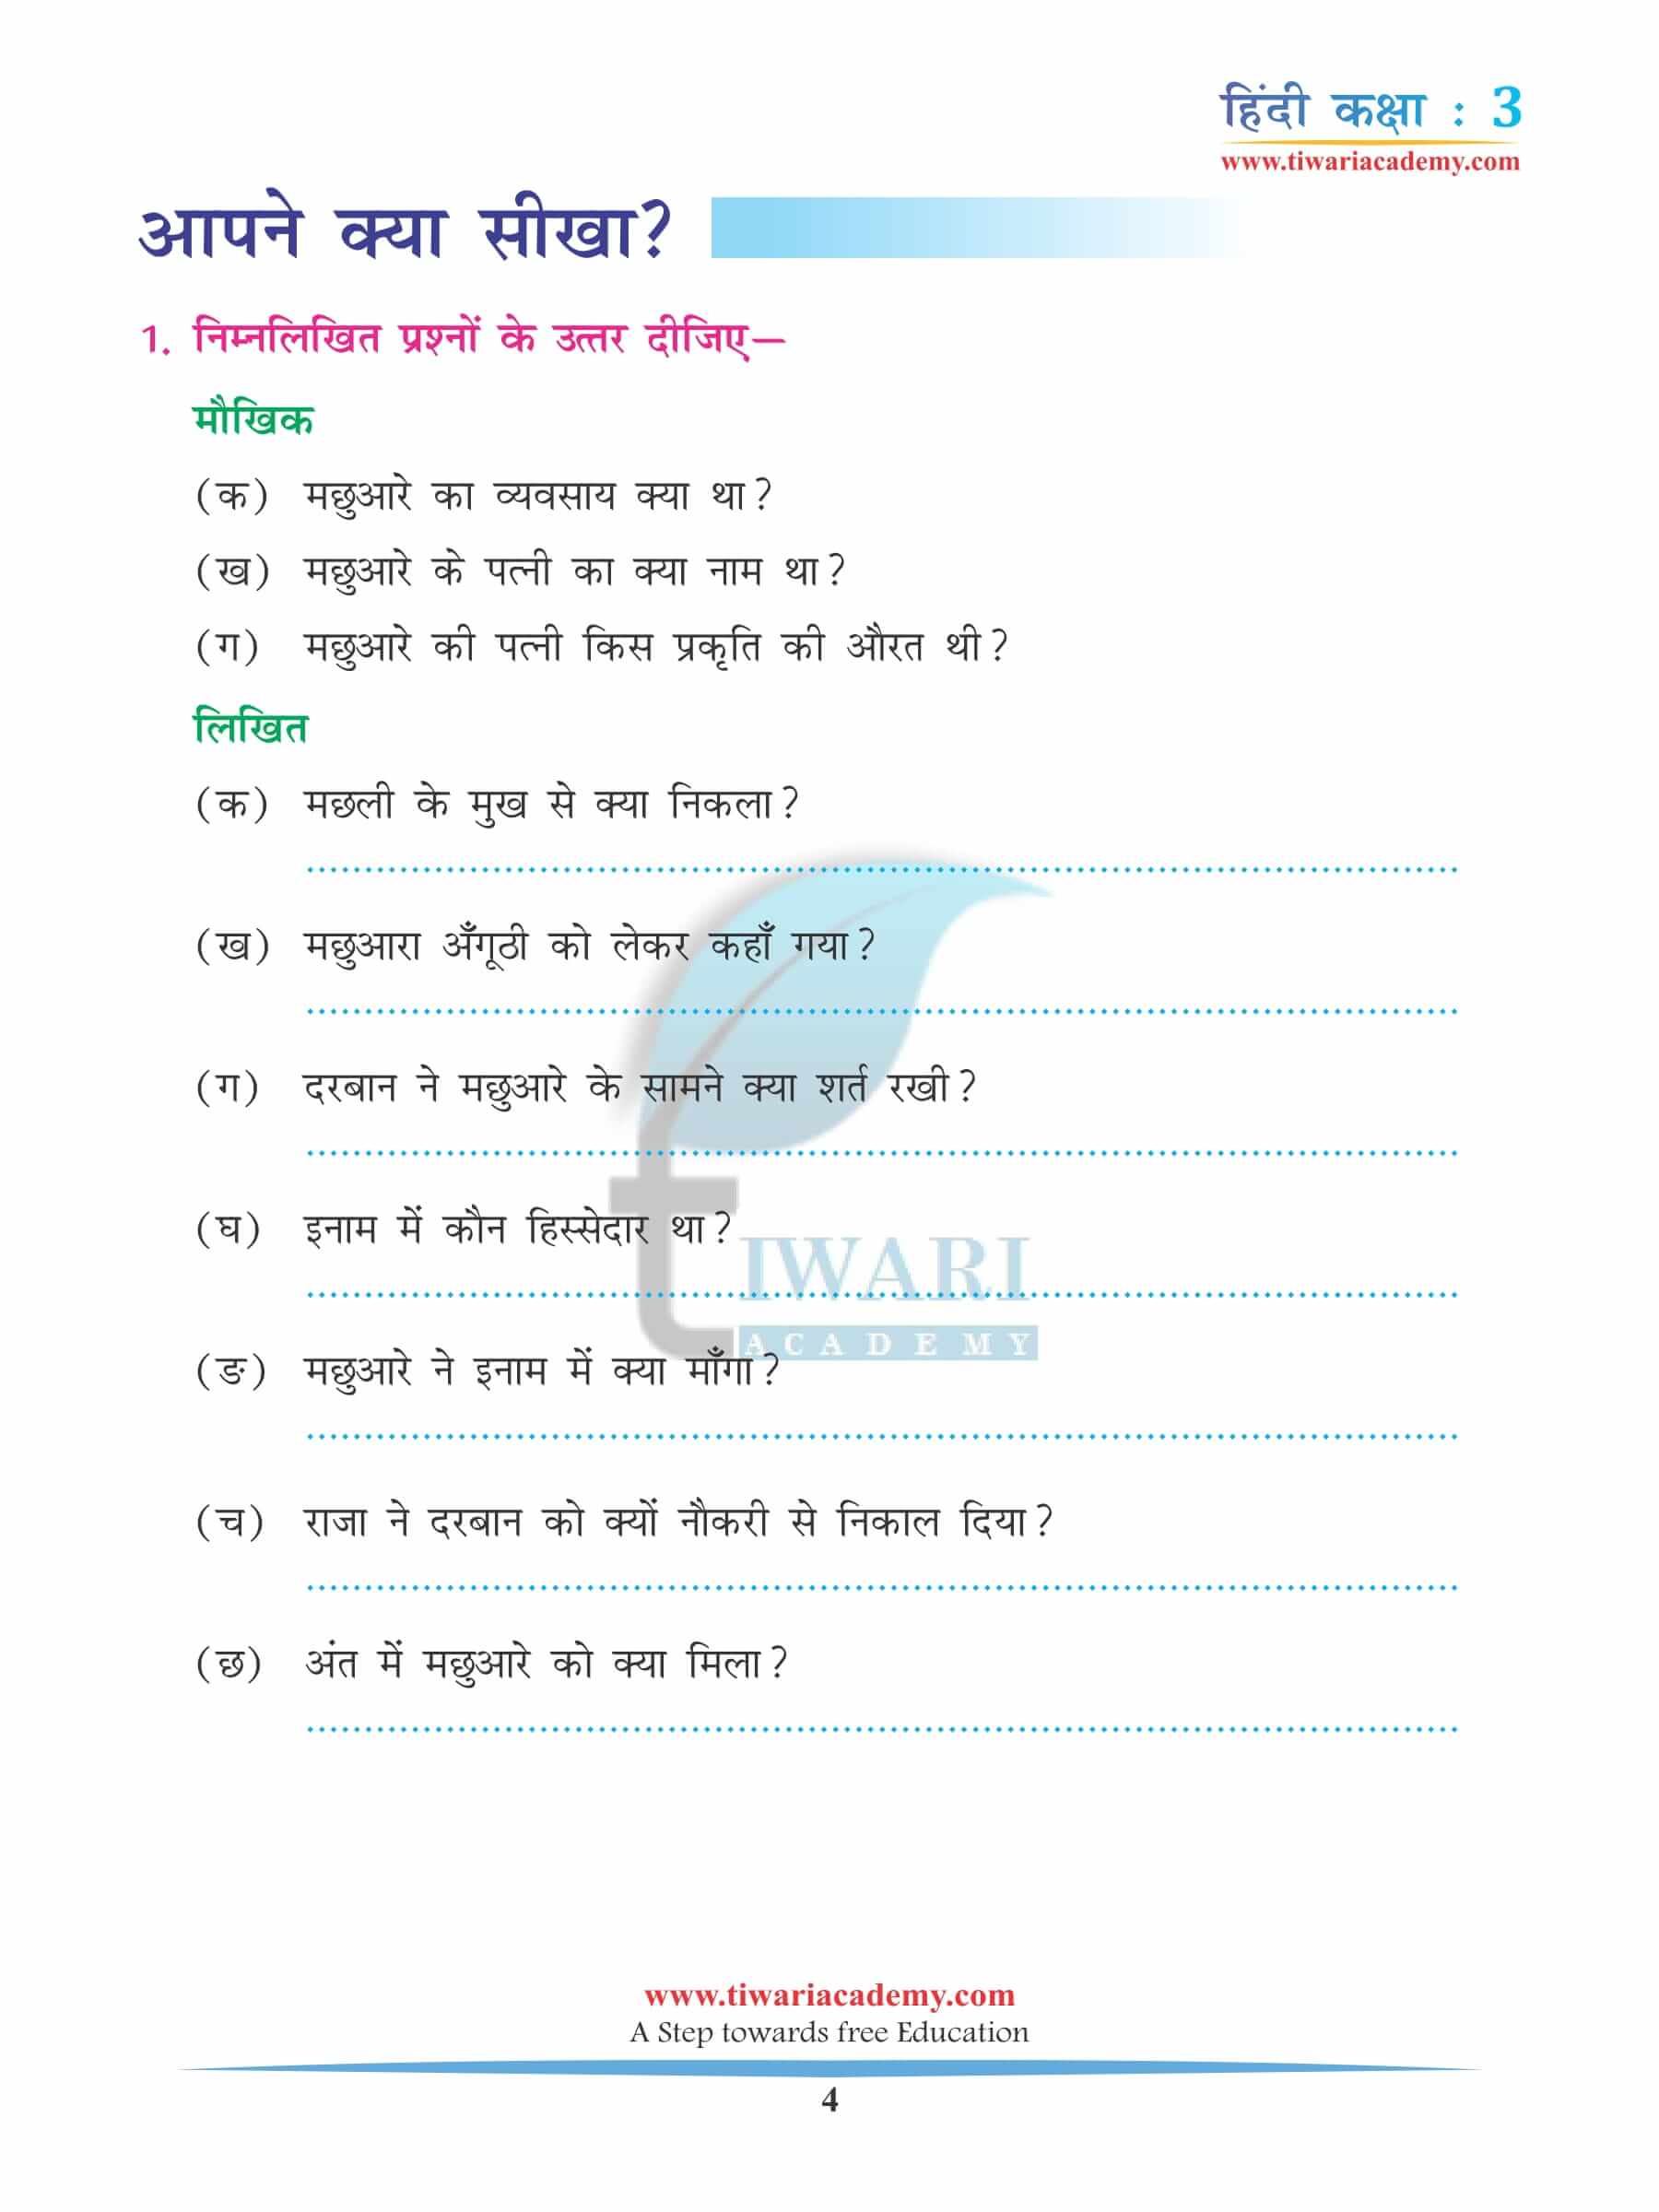 कक्षा 3 हिंदी अध्याय 13 अभ्यास